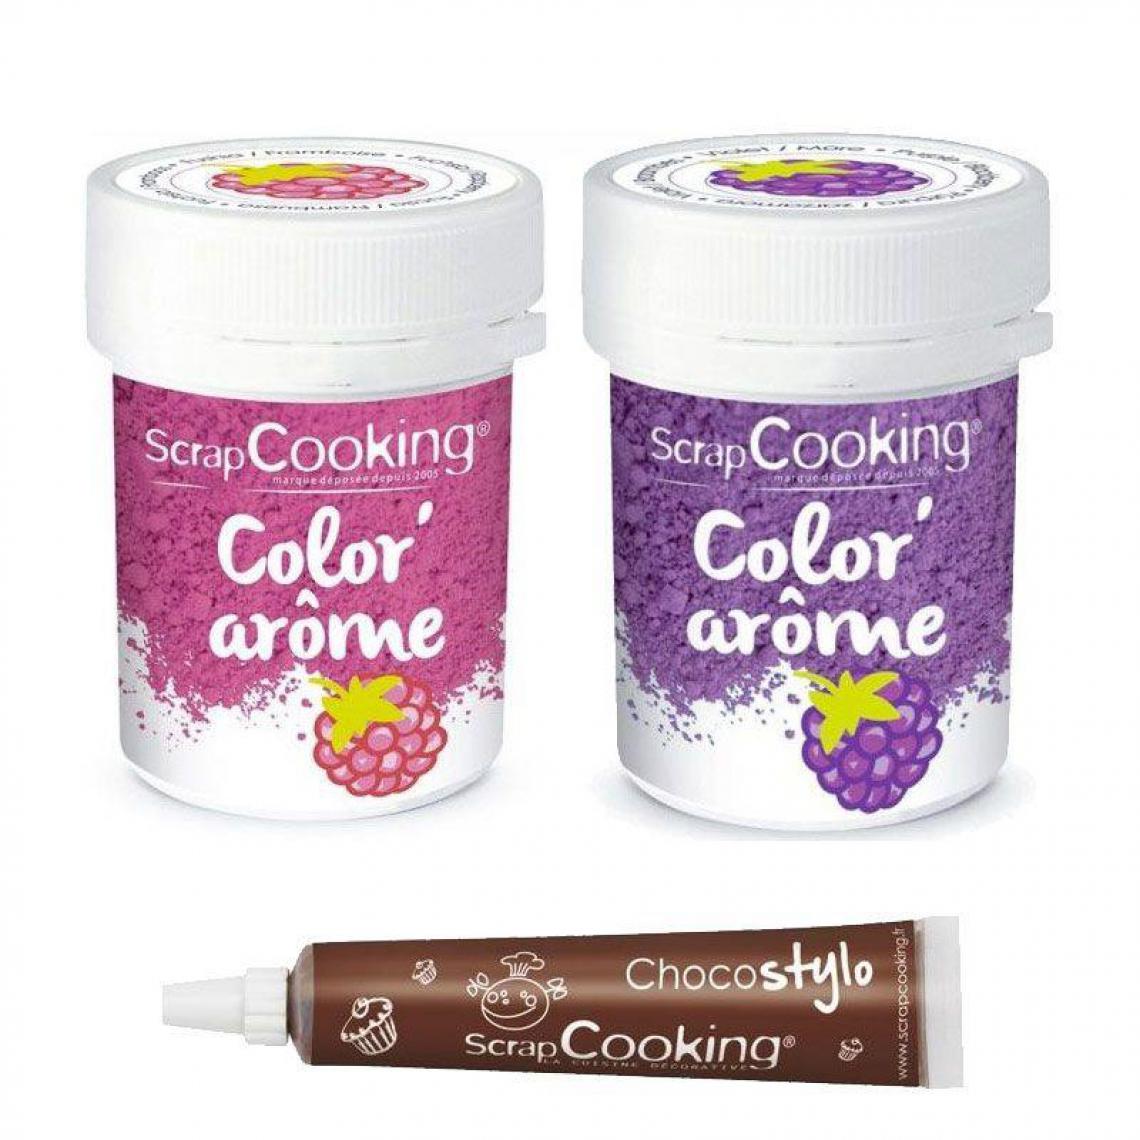 Scrapcooking - 2 colorants alimentaires aux arômes de framboise & mûre + Stylo chocolat - Kits créatifs